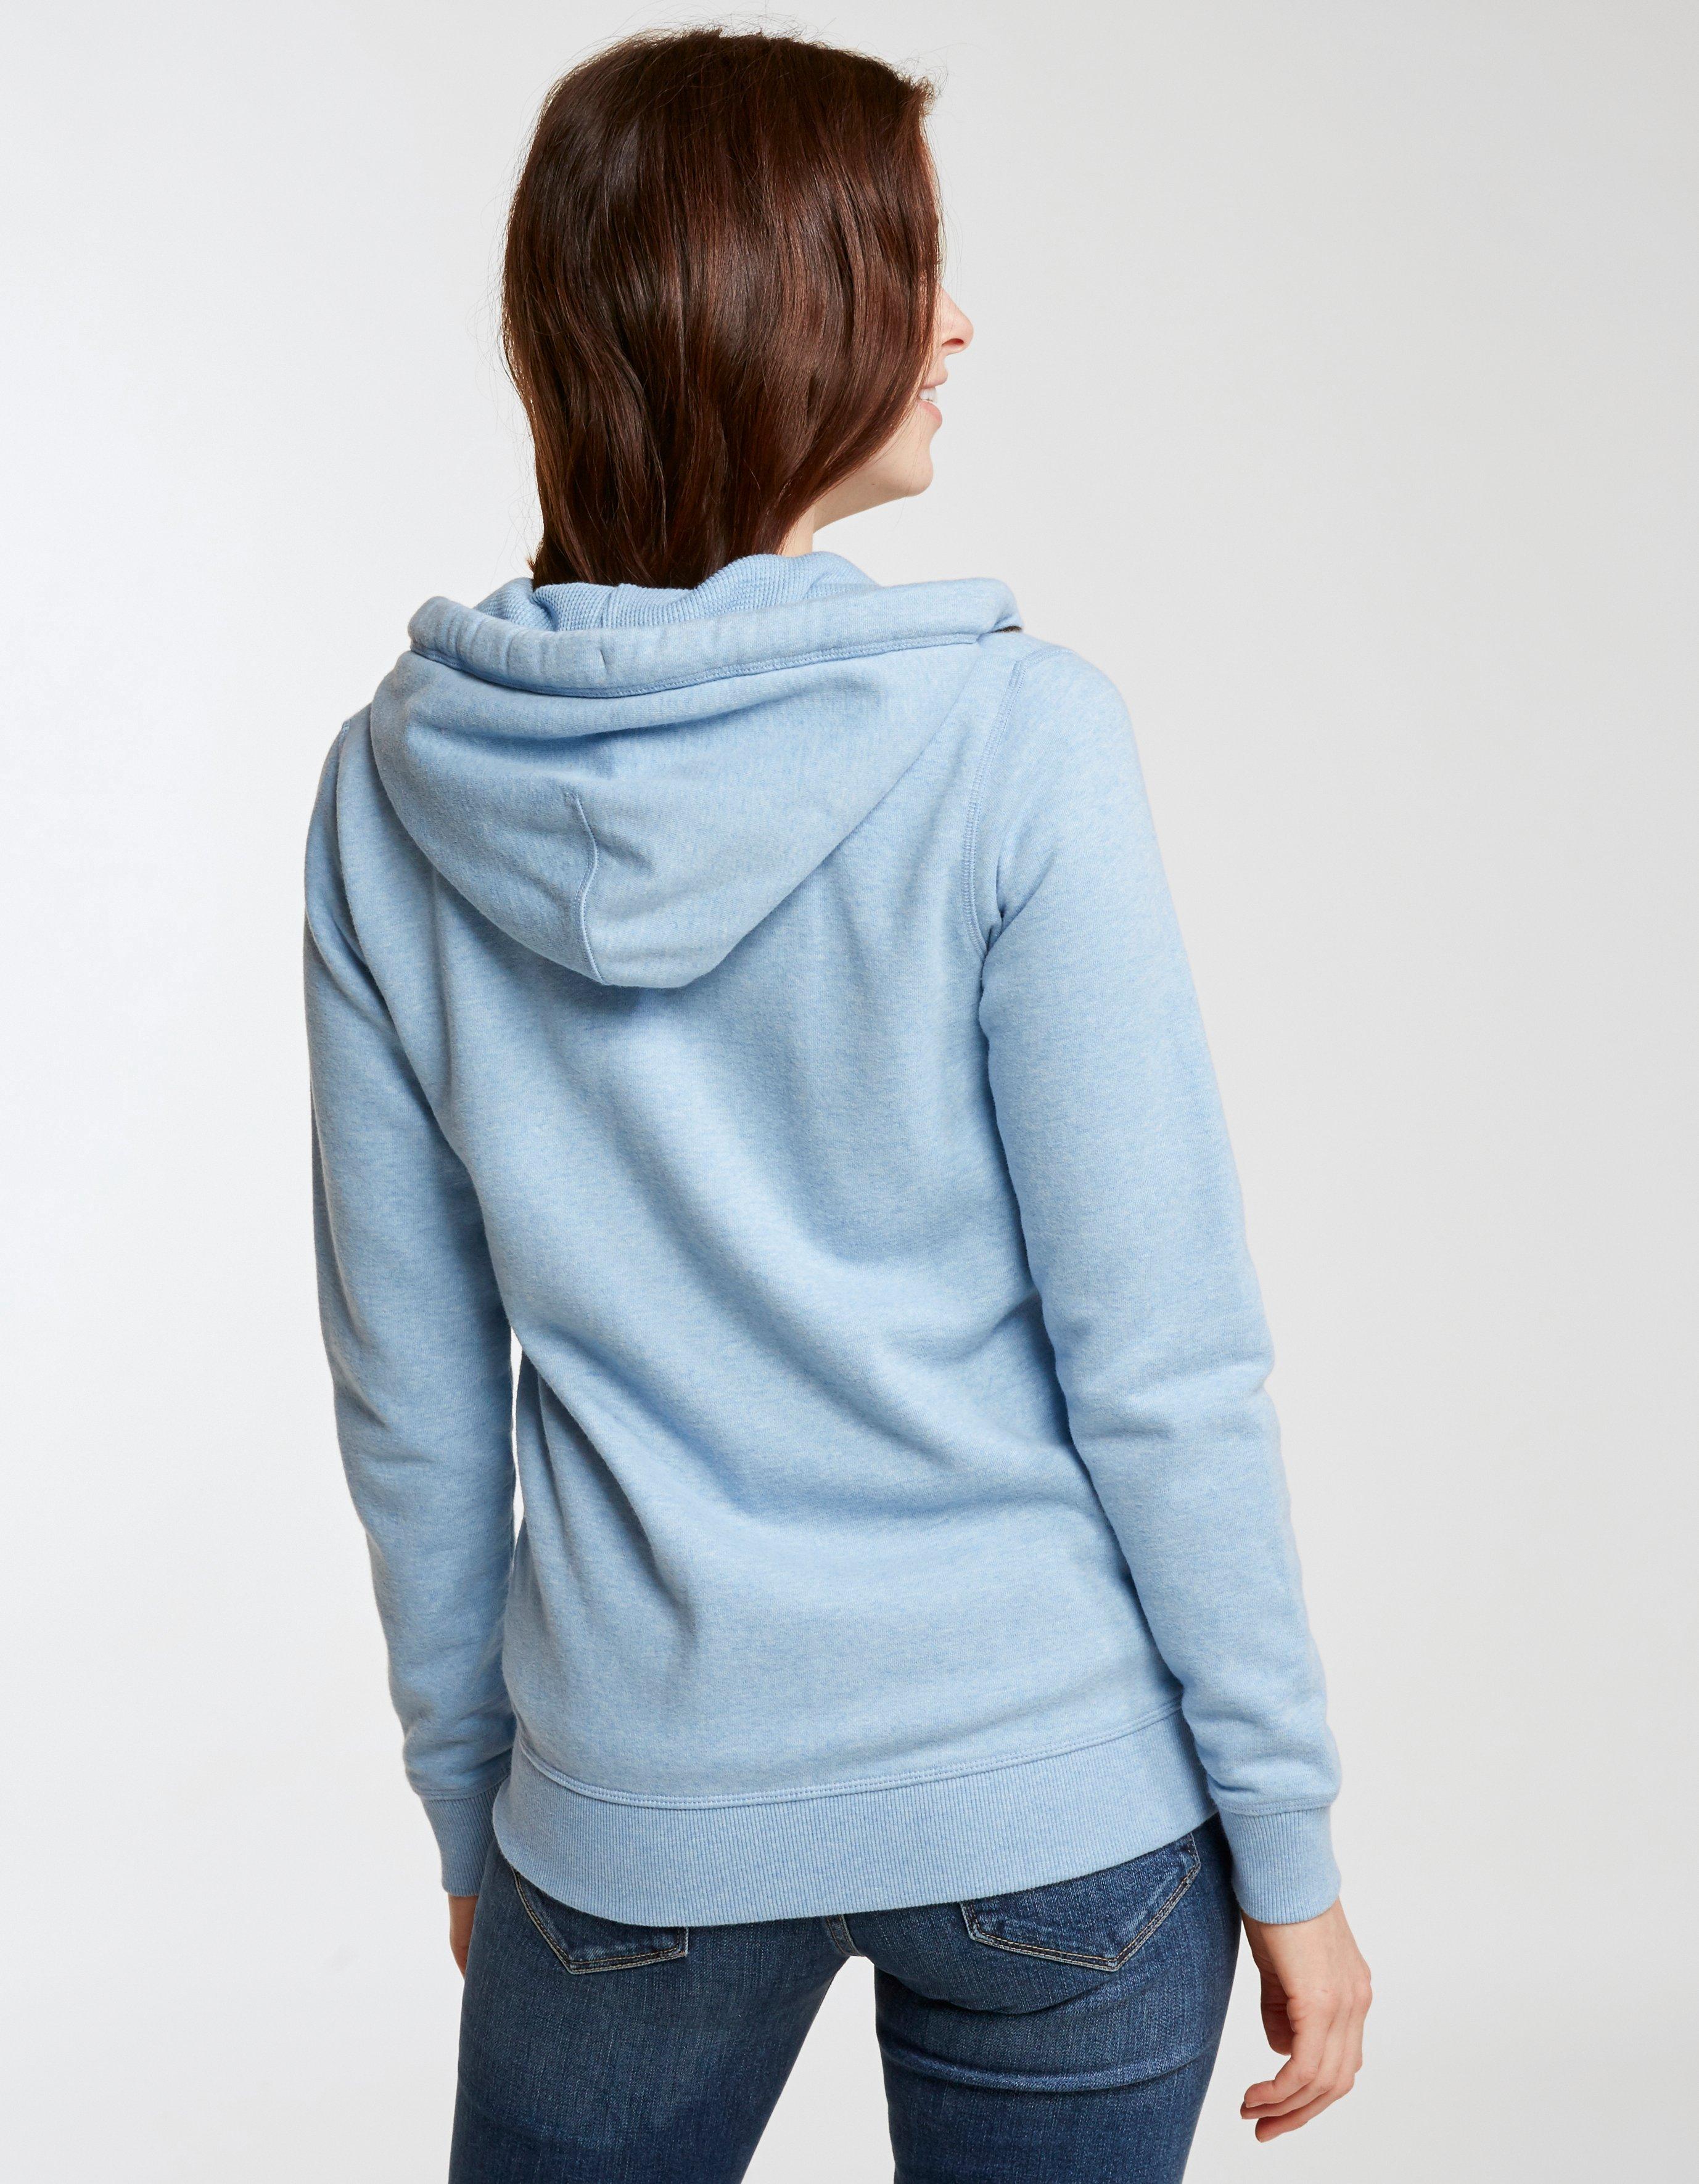 Women | Clothing | Sweatshirts & Hoodies | FatFace.com